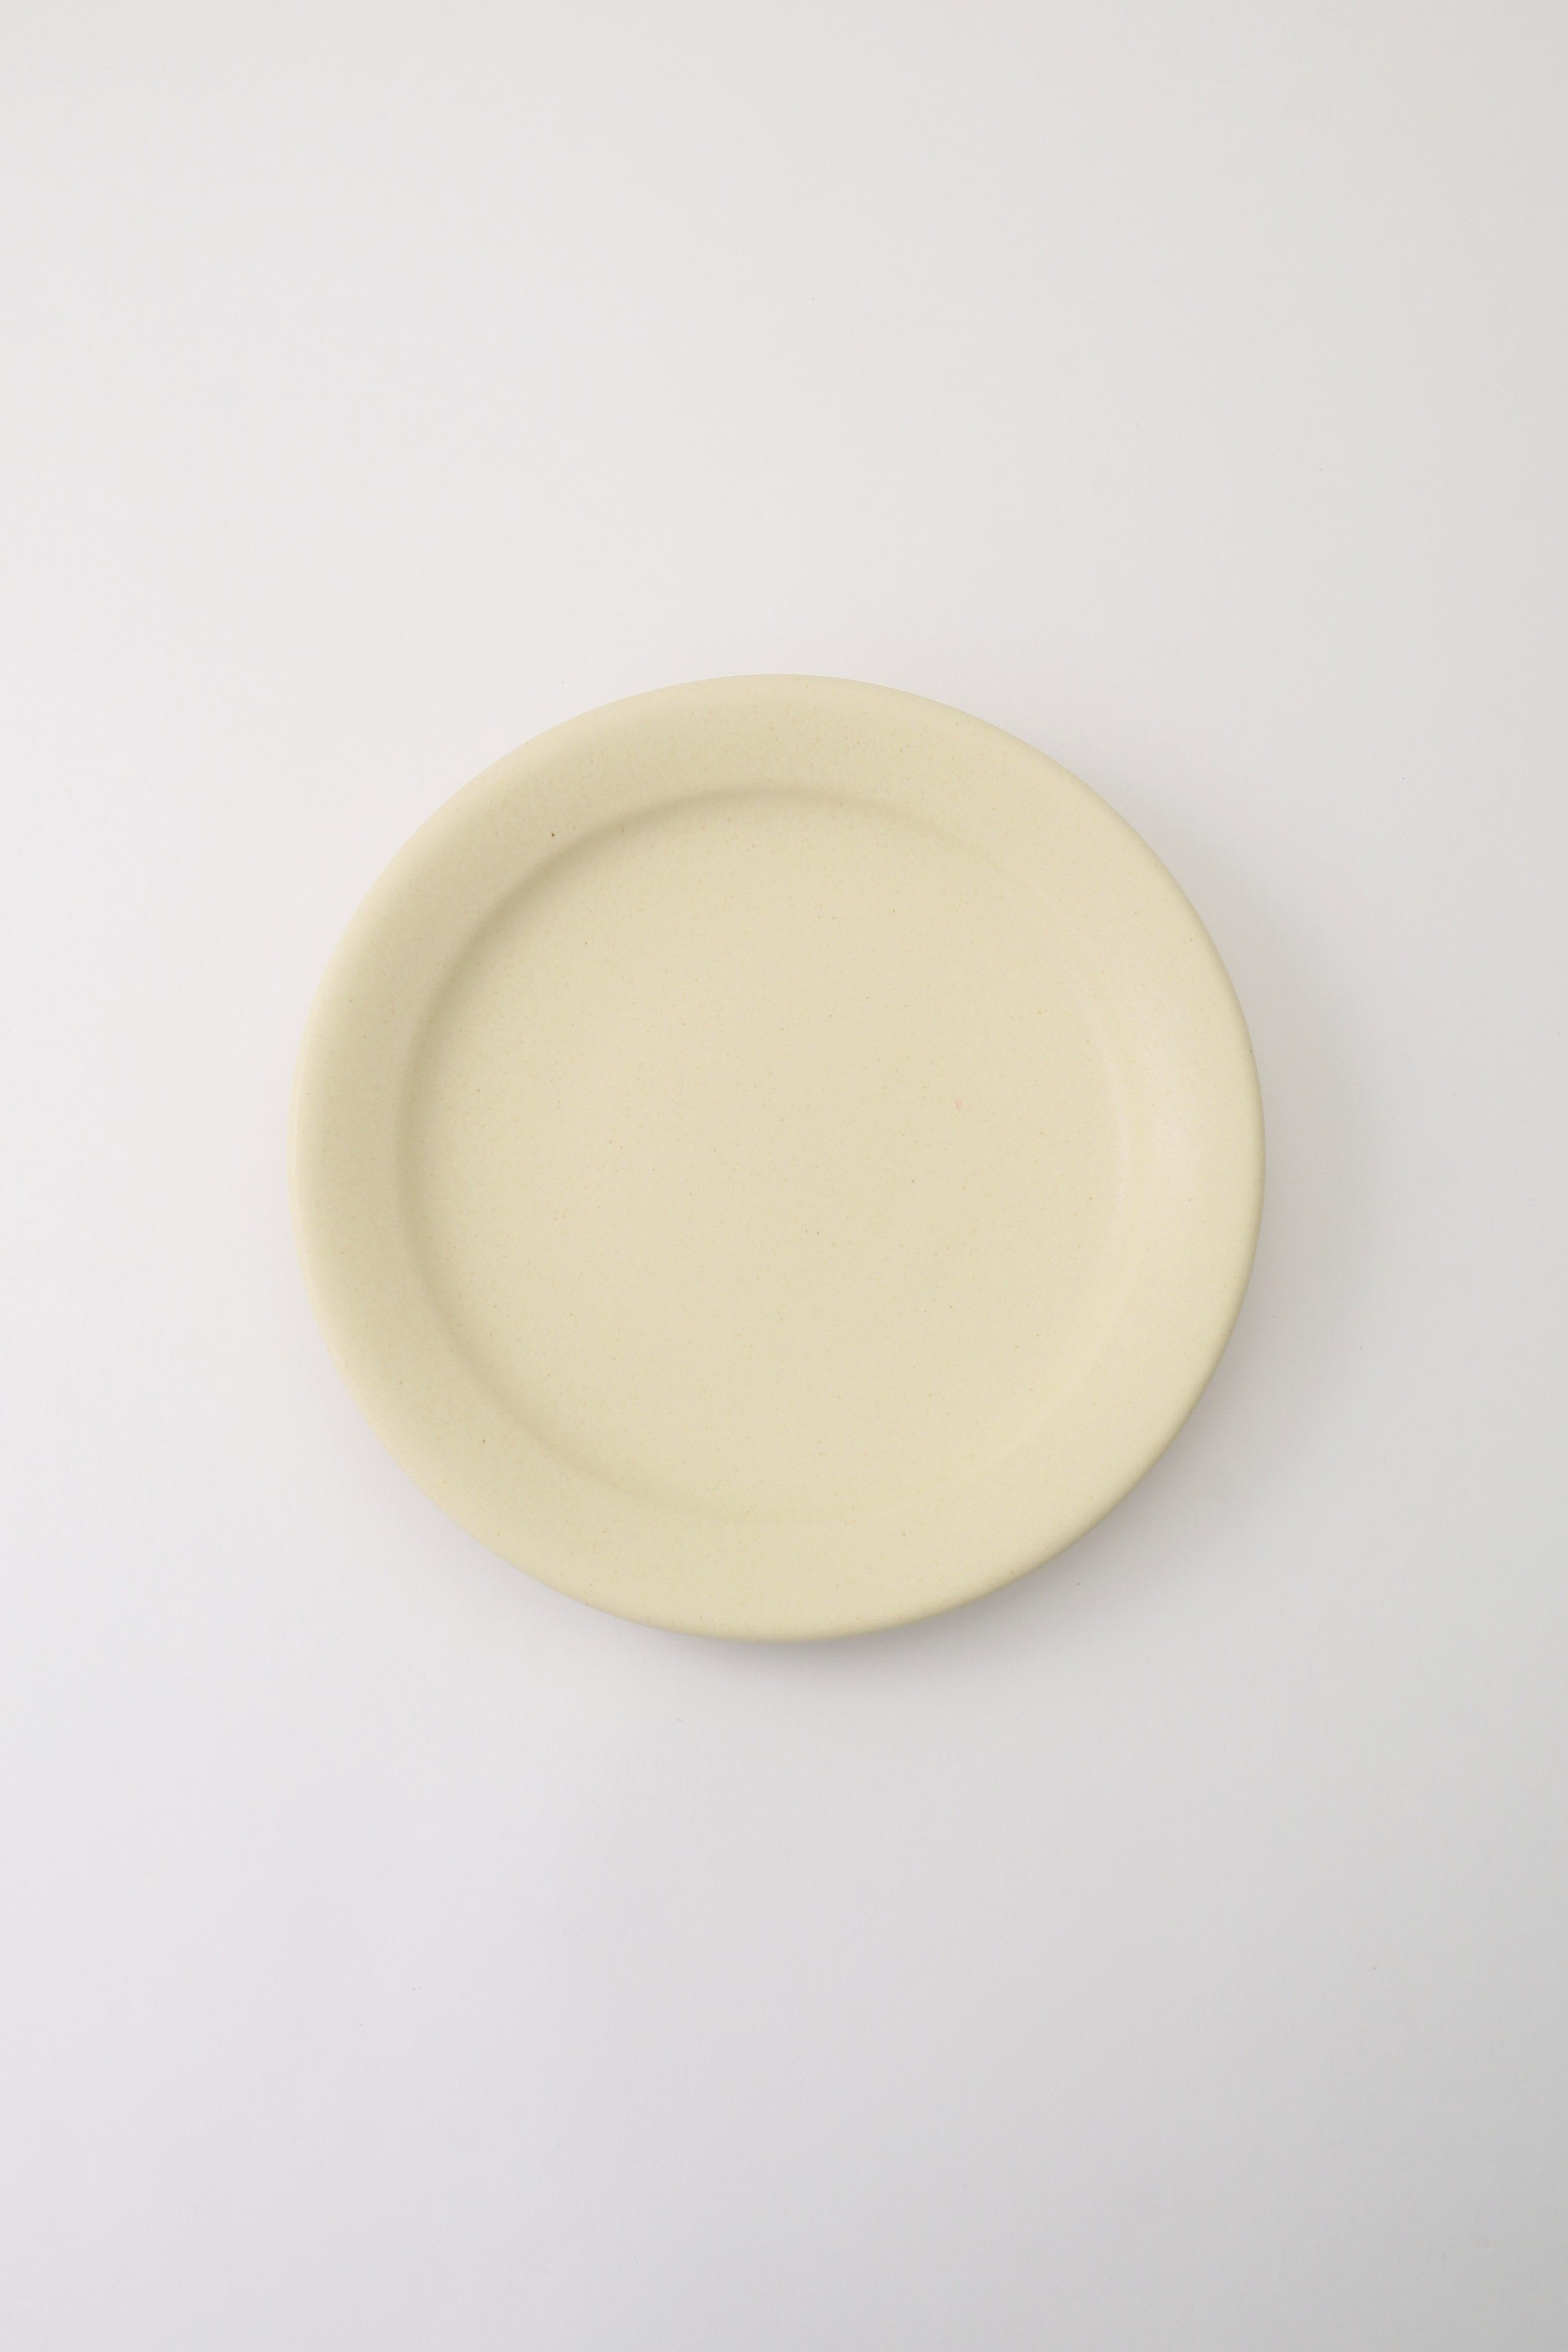 あわびウェア/Awabi wareの８寸平成平皿(アイボリー/L01-013)